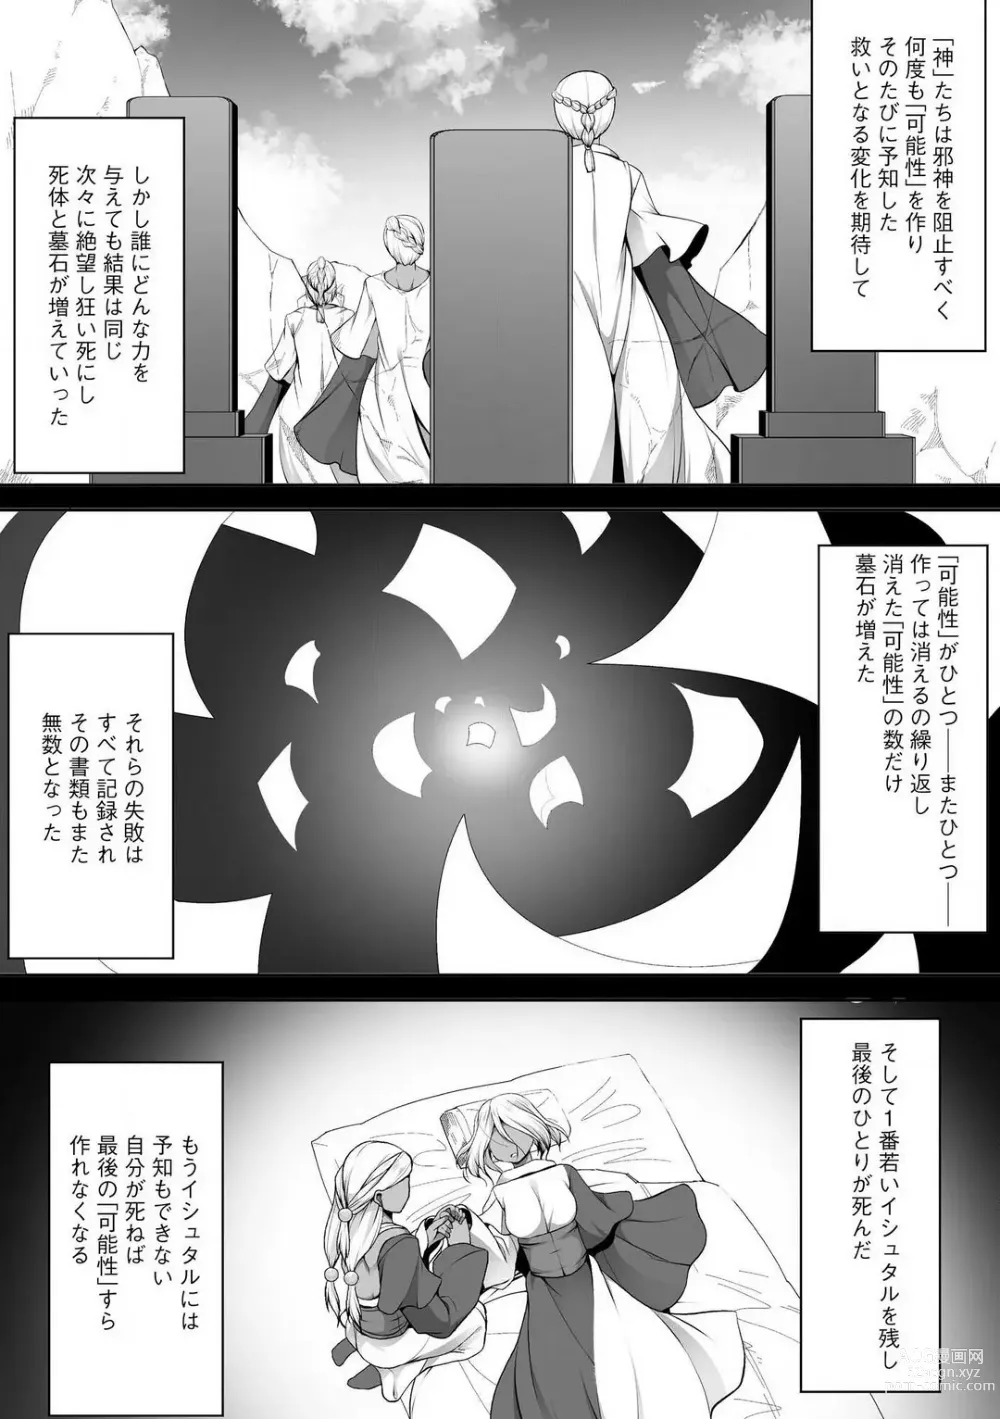 Page 330 of manga Cheat Skill Shihai